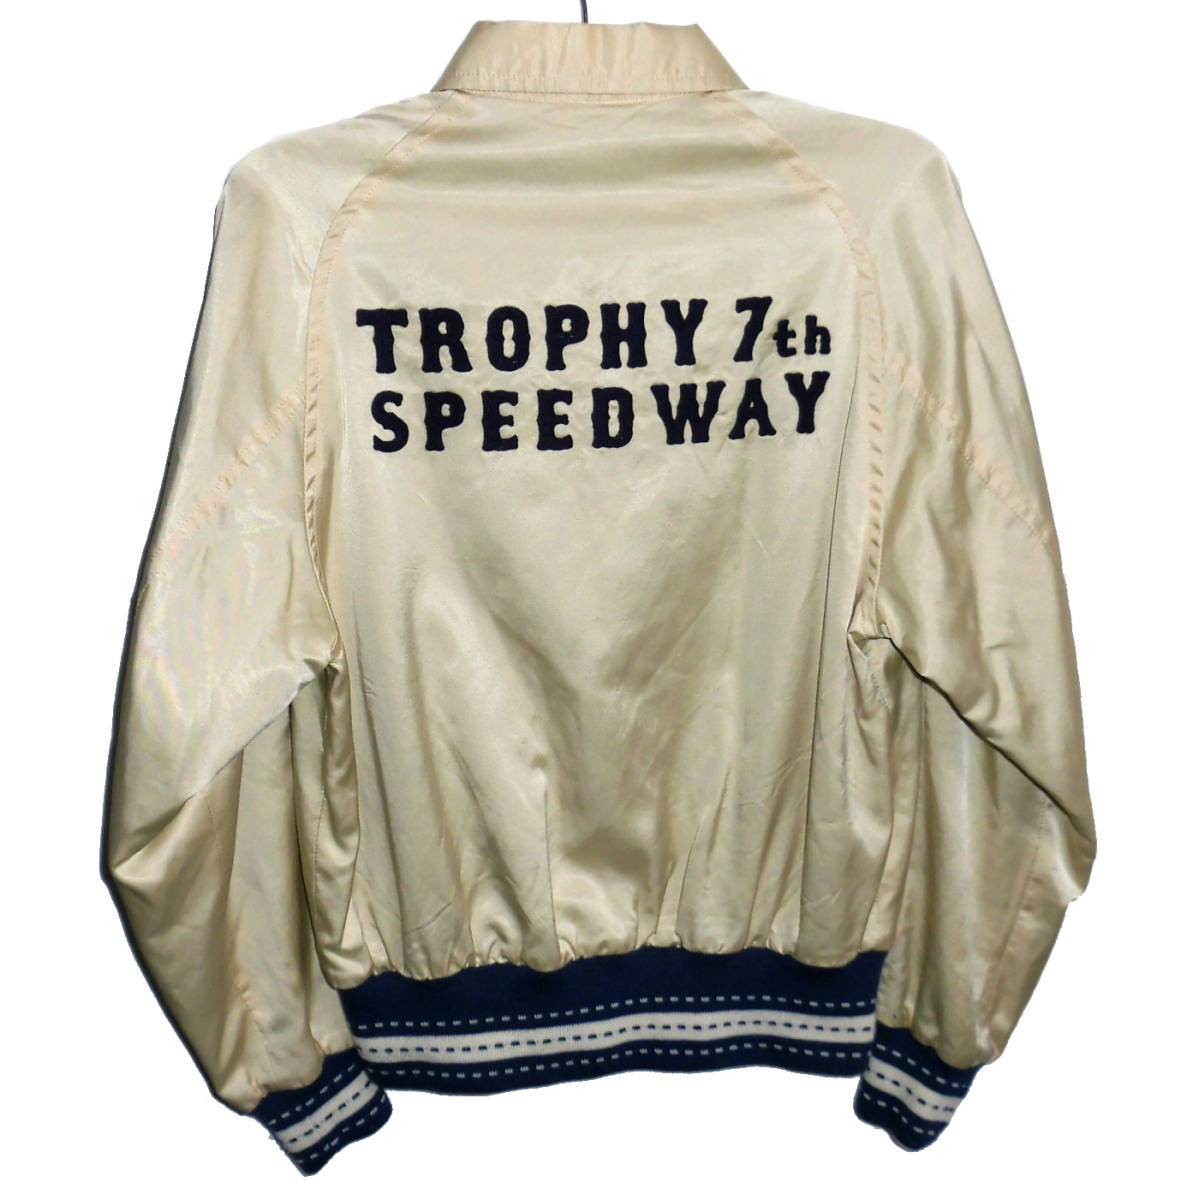 ◇美品 TROPHY CLOTHING トロフィークロージング SEVENTH TEAM JKT 7th SPEED WAY 7周年記念 サテン チームジャケット 36_画像1